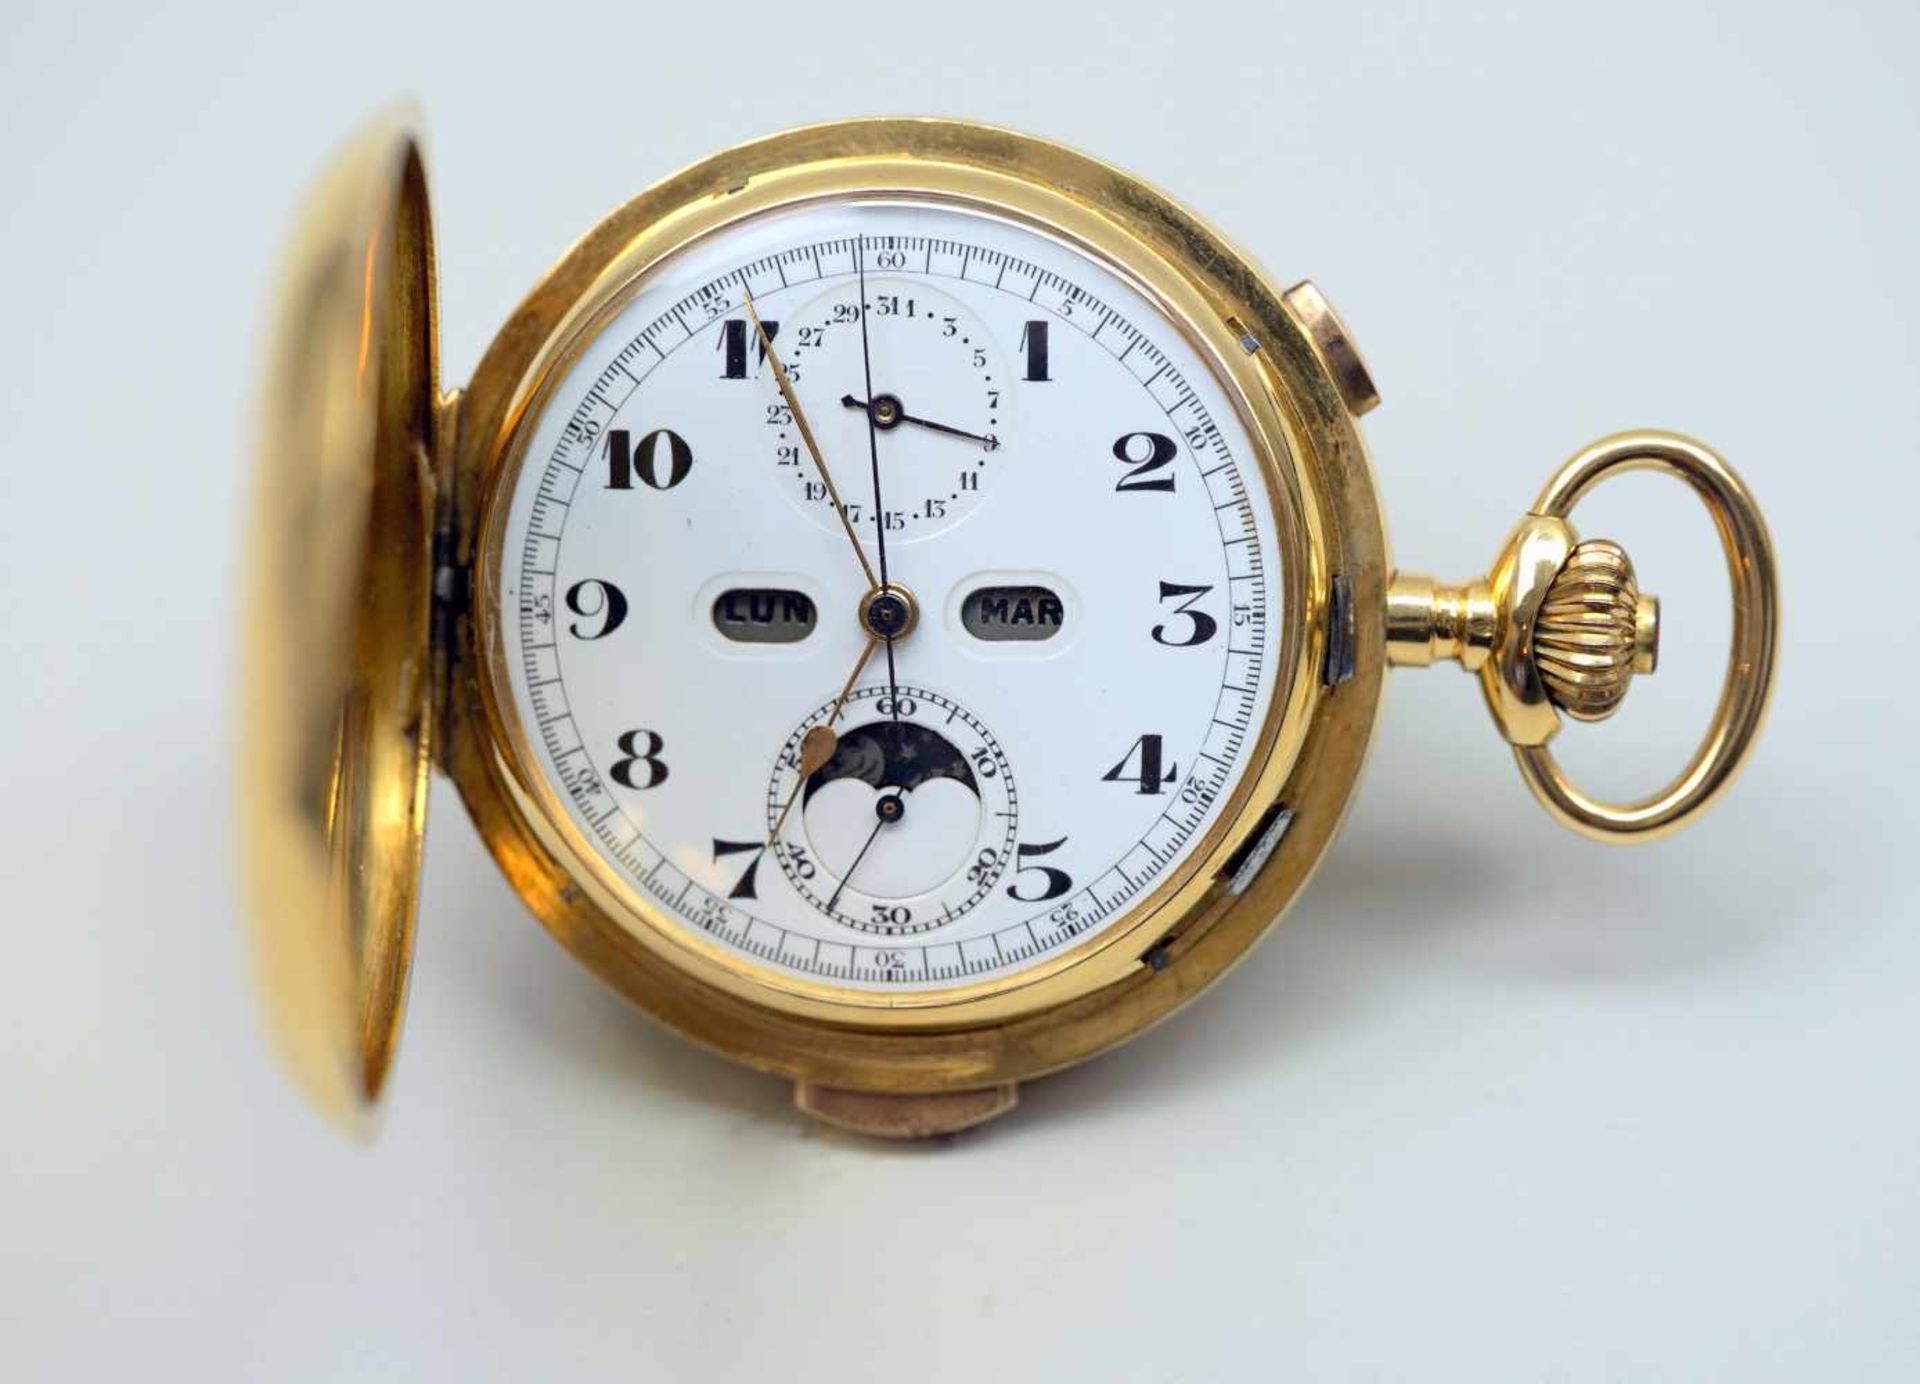 Große TaschenuhrGold. Große Taschenuhr mit drei Deckeln, Gold. Mit Mondphase, Tag sowie Datum und